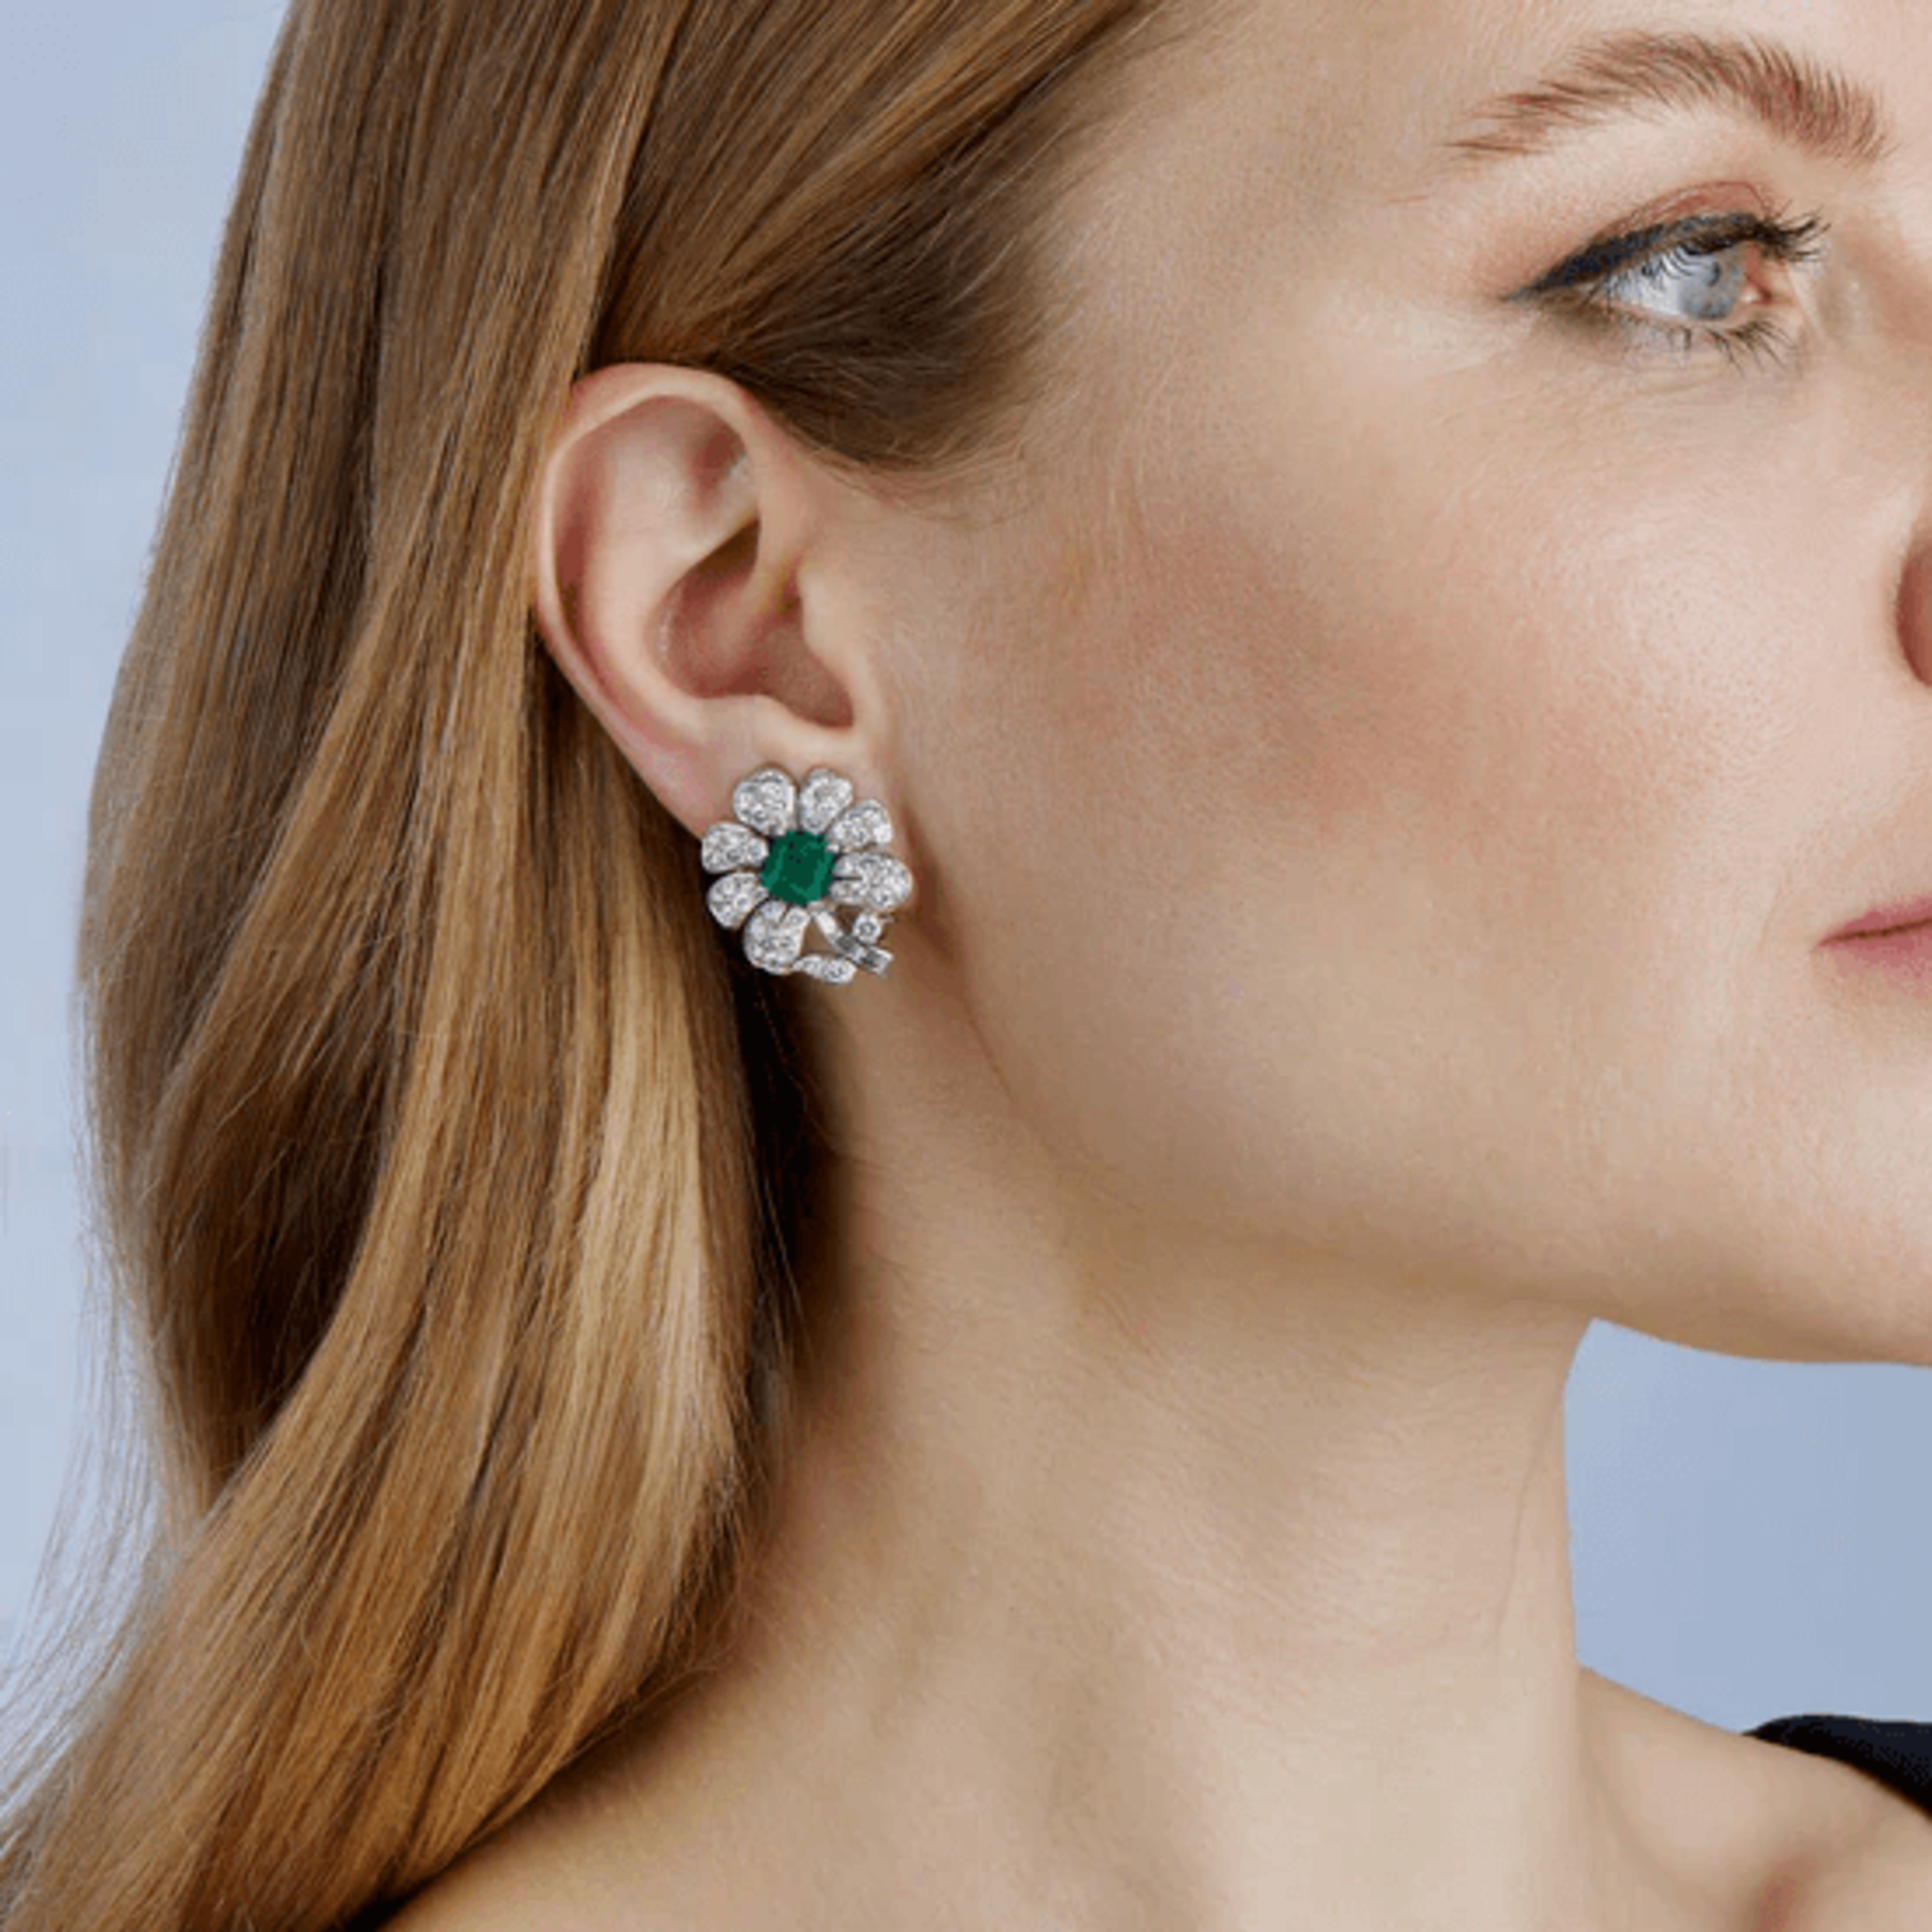 Gazdar 1950s Platinum Emerald & Diamond Flower Earrings on ear